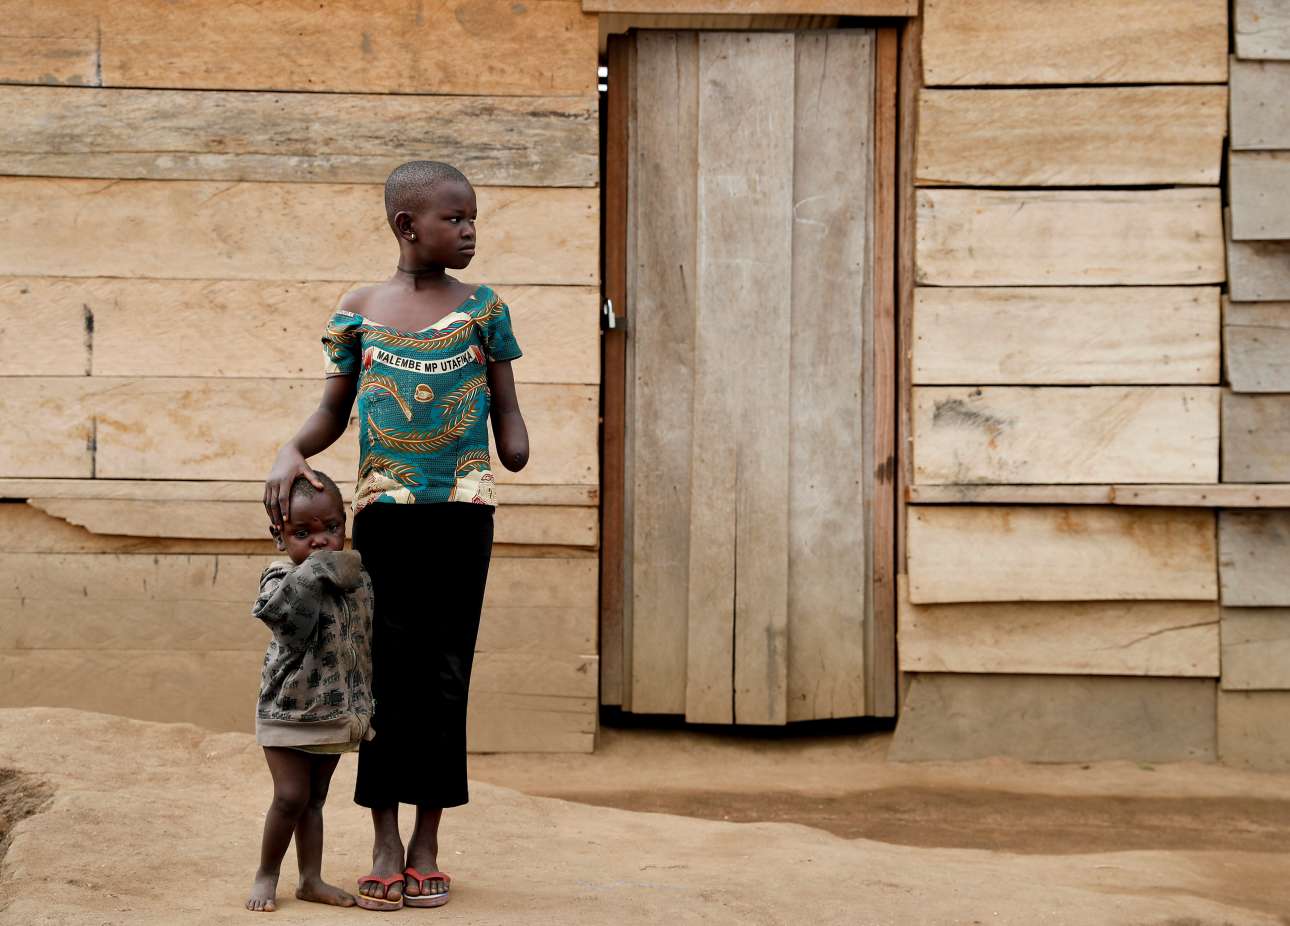 Δευτέρα, 16 Απριλίου, Κονγκό. Η Μάβε Γκρέις, 11 ετών, που έχασε τον βραχίονα του αριστερού χεριού της κατά τη διάρκεια εισβολής του στρατού στο χωριό της, προσέχει τον μικρό της αδερφό σε καταυλισμό εκτοπισμένων στην πόλη Μπούνια